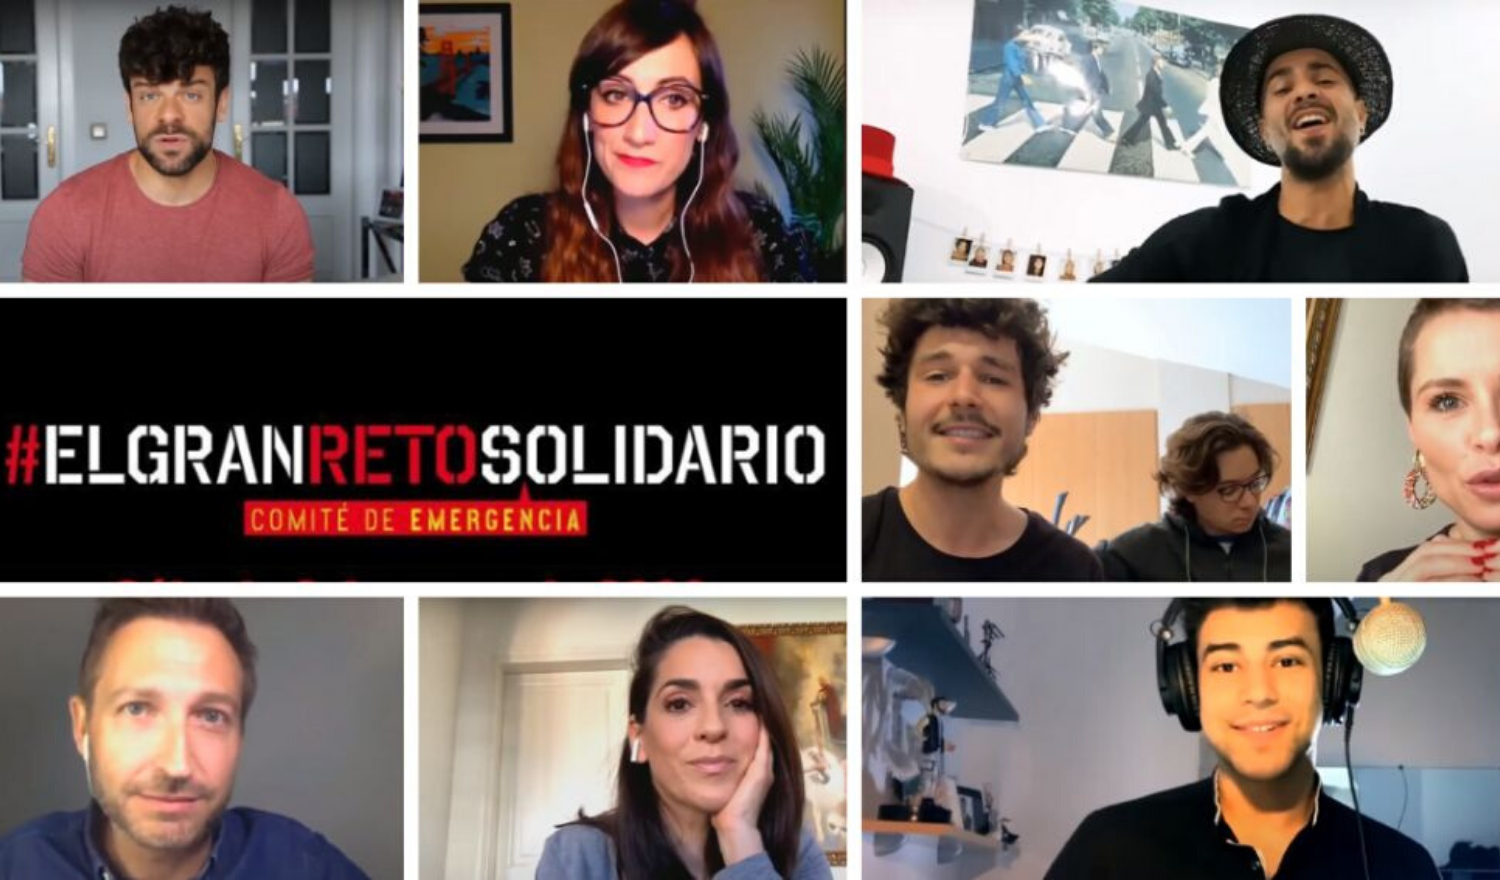 El Gran Reto Solidario' reune a mÃ¡s de 100 artistas entre cantantes,  influencers y presentadores de televisiÃ³n - El Foco